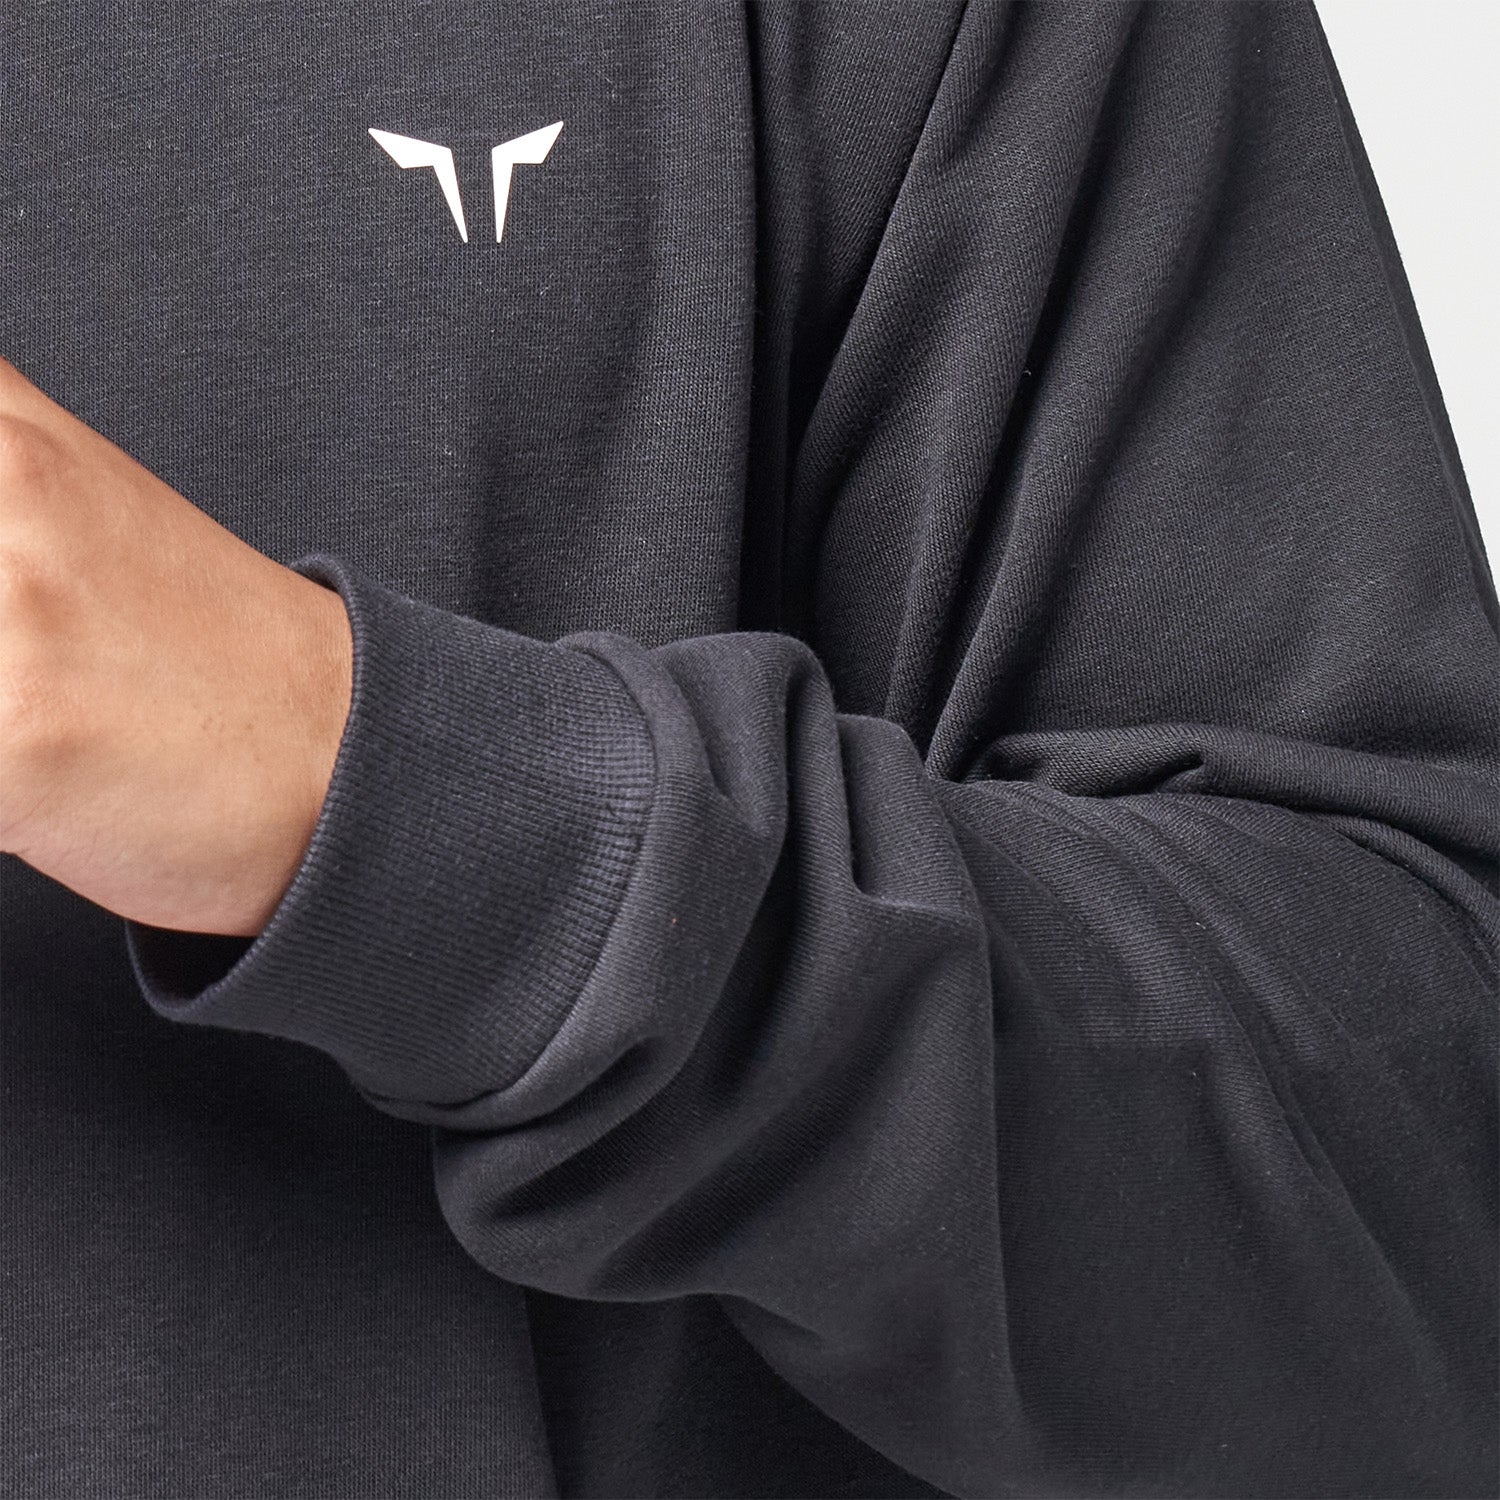 Men's Essential Sweatshirt in Black